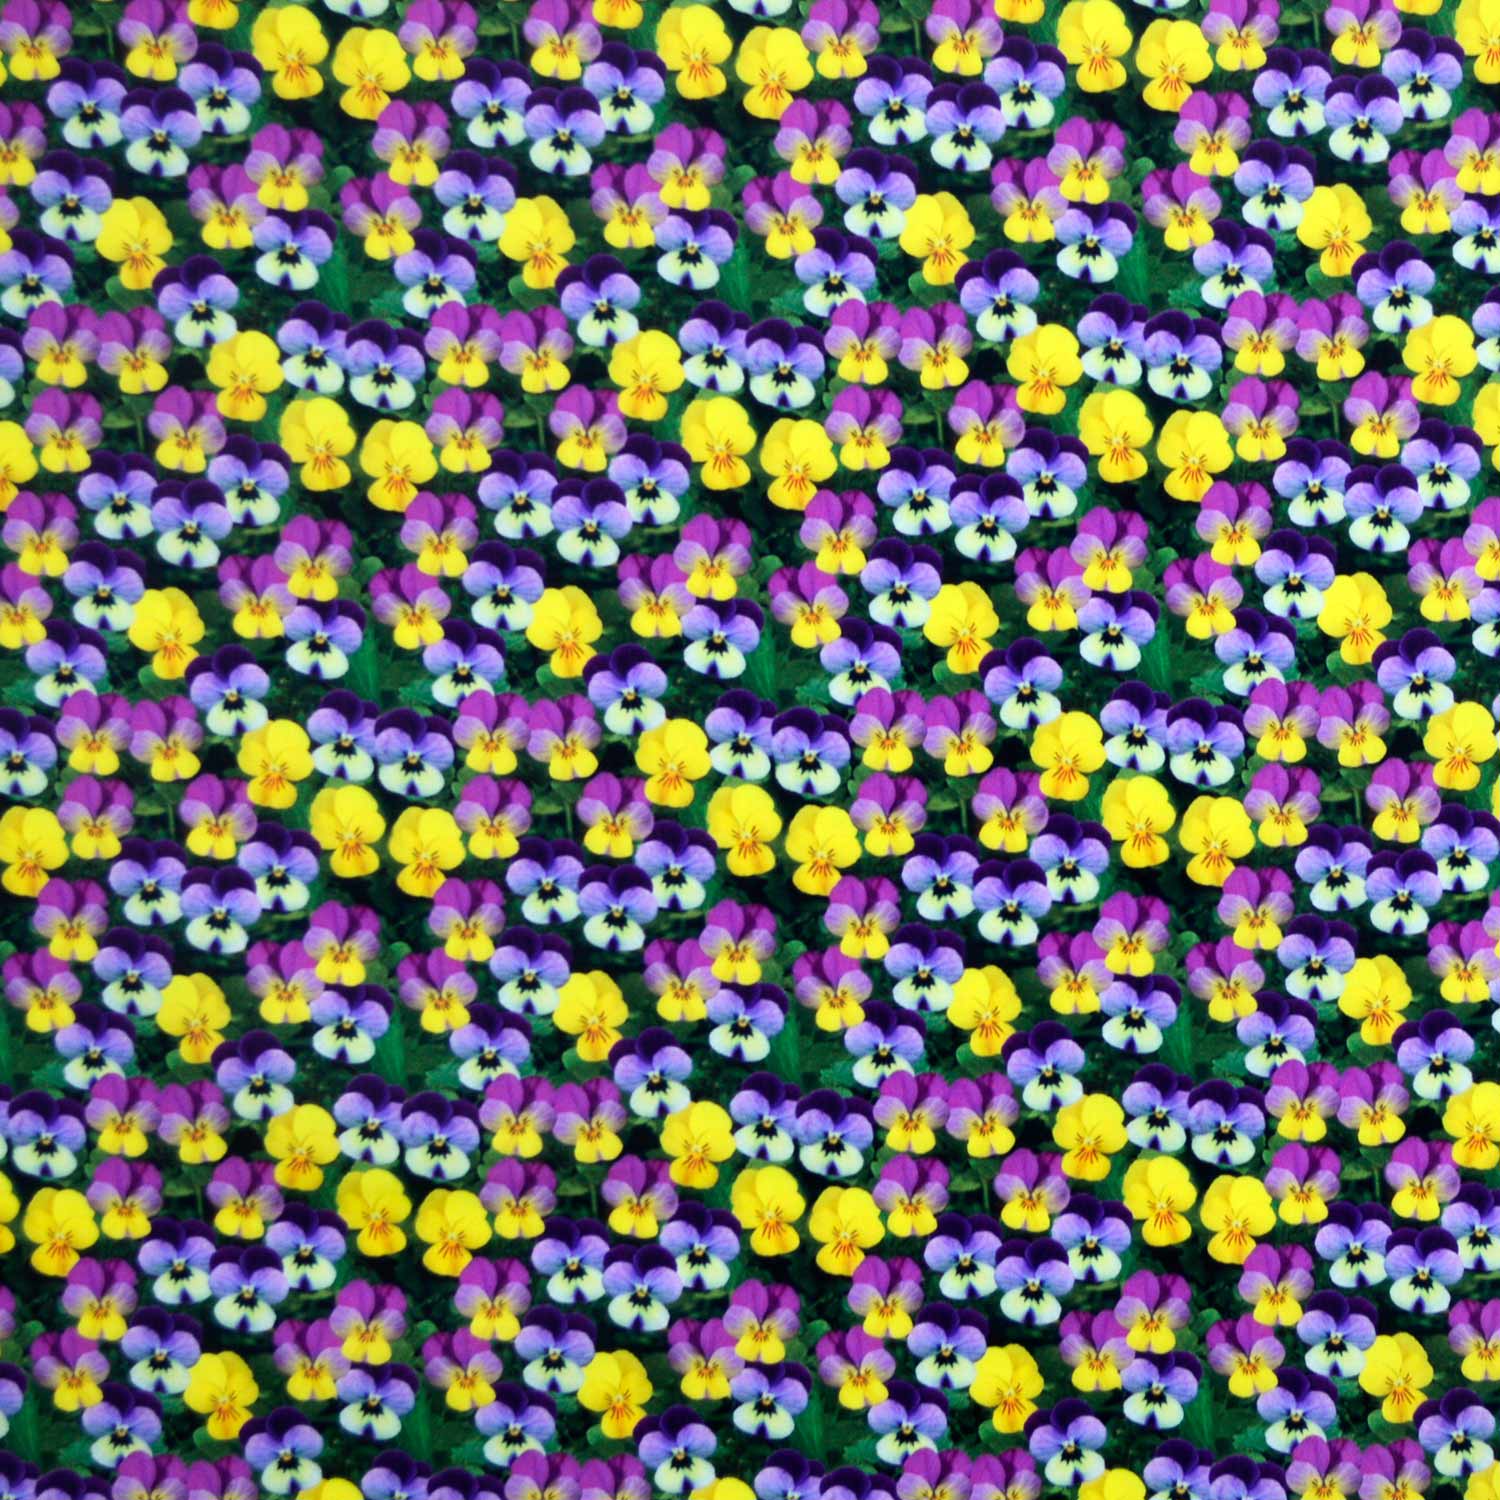 tecido-tricoline-estampado-digital-3d-floral-amor-perfeito-della-aviamentos-tecidos-caldeira-11056